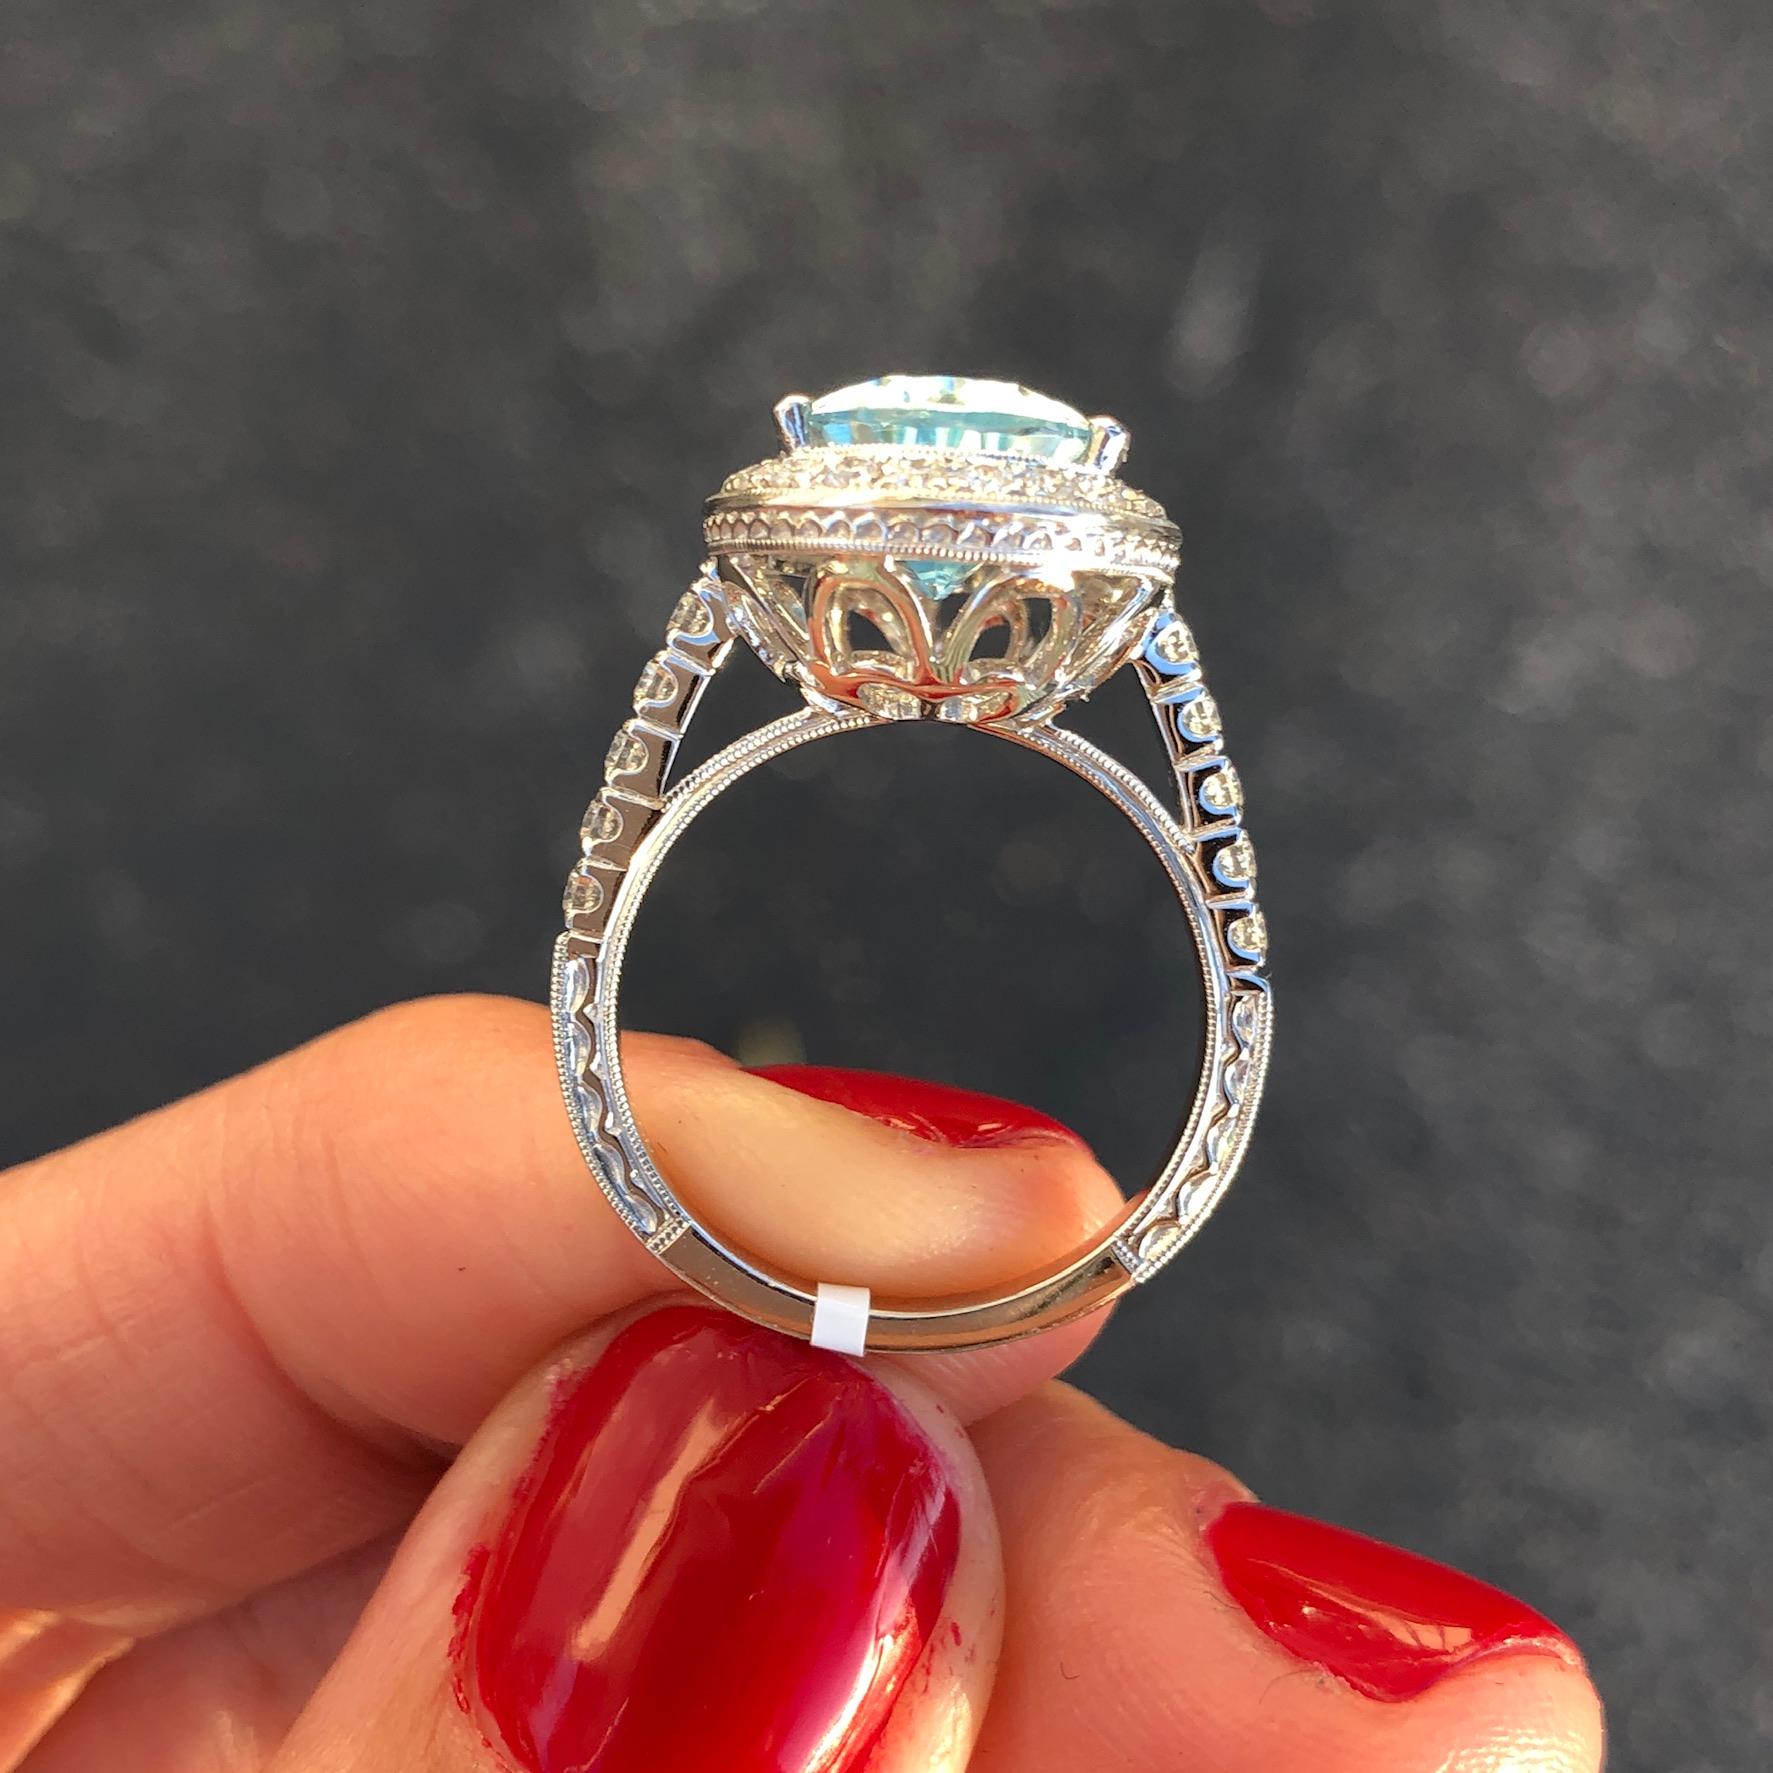 lisa vanderpump wedding ring